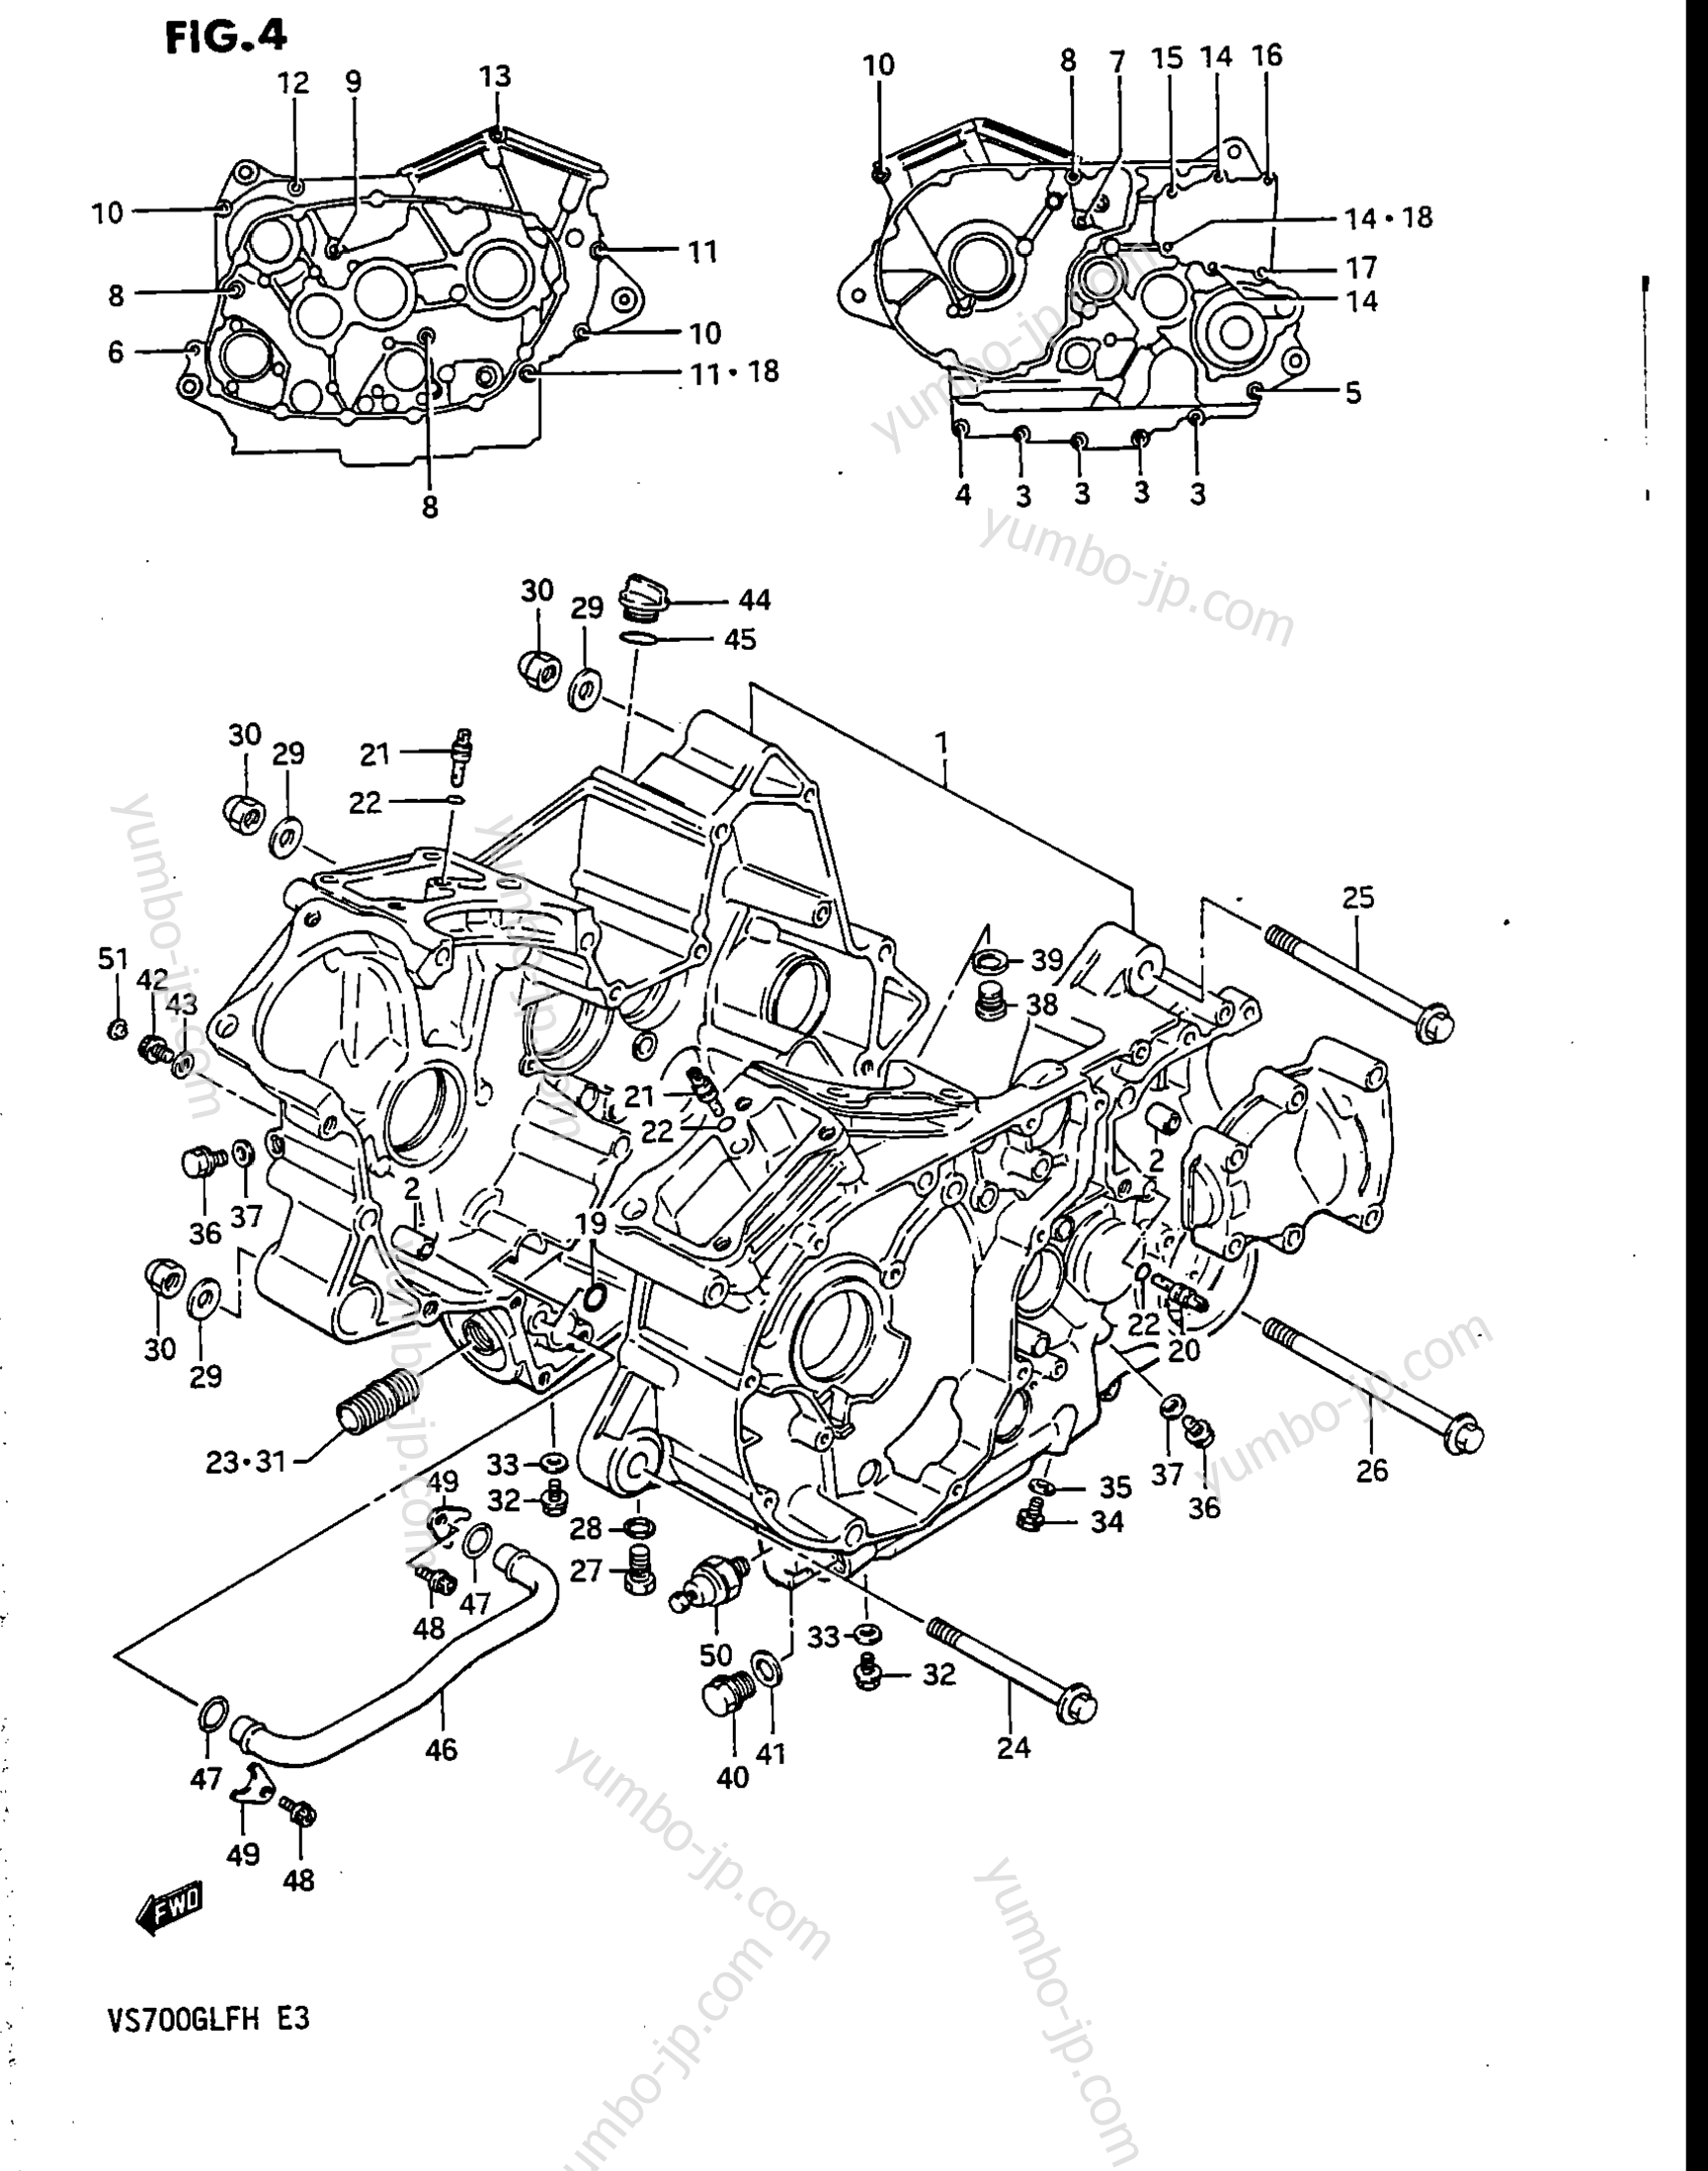 Крышка картера для мотоциклов SUZUKI Intruder (VS700GLEF) 1986 г.